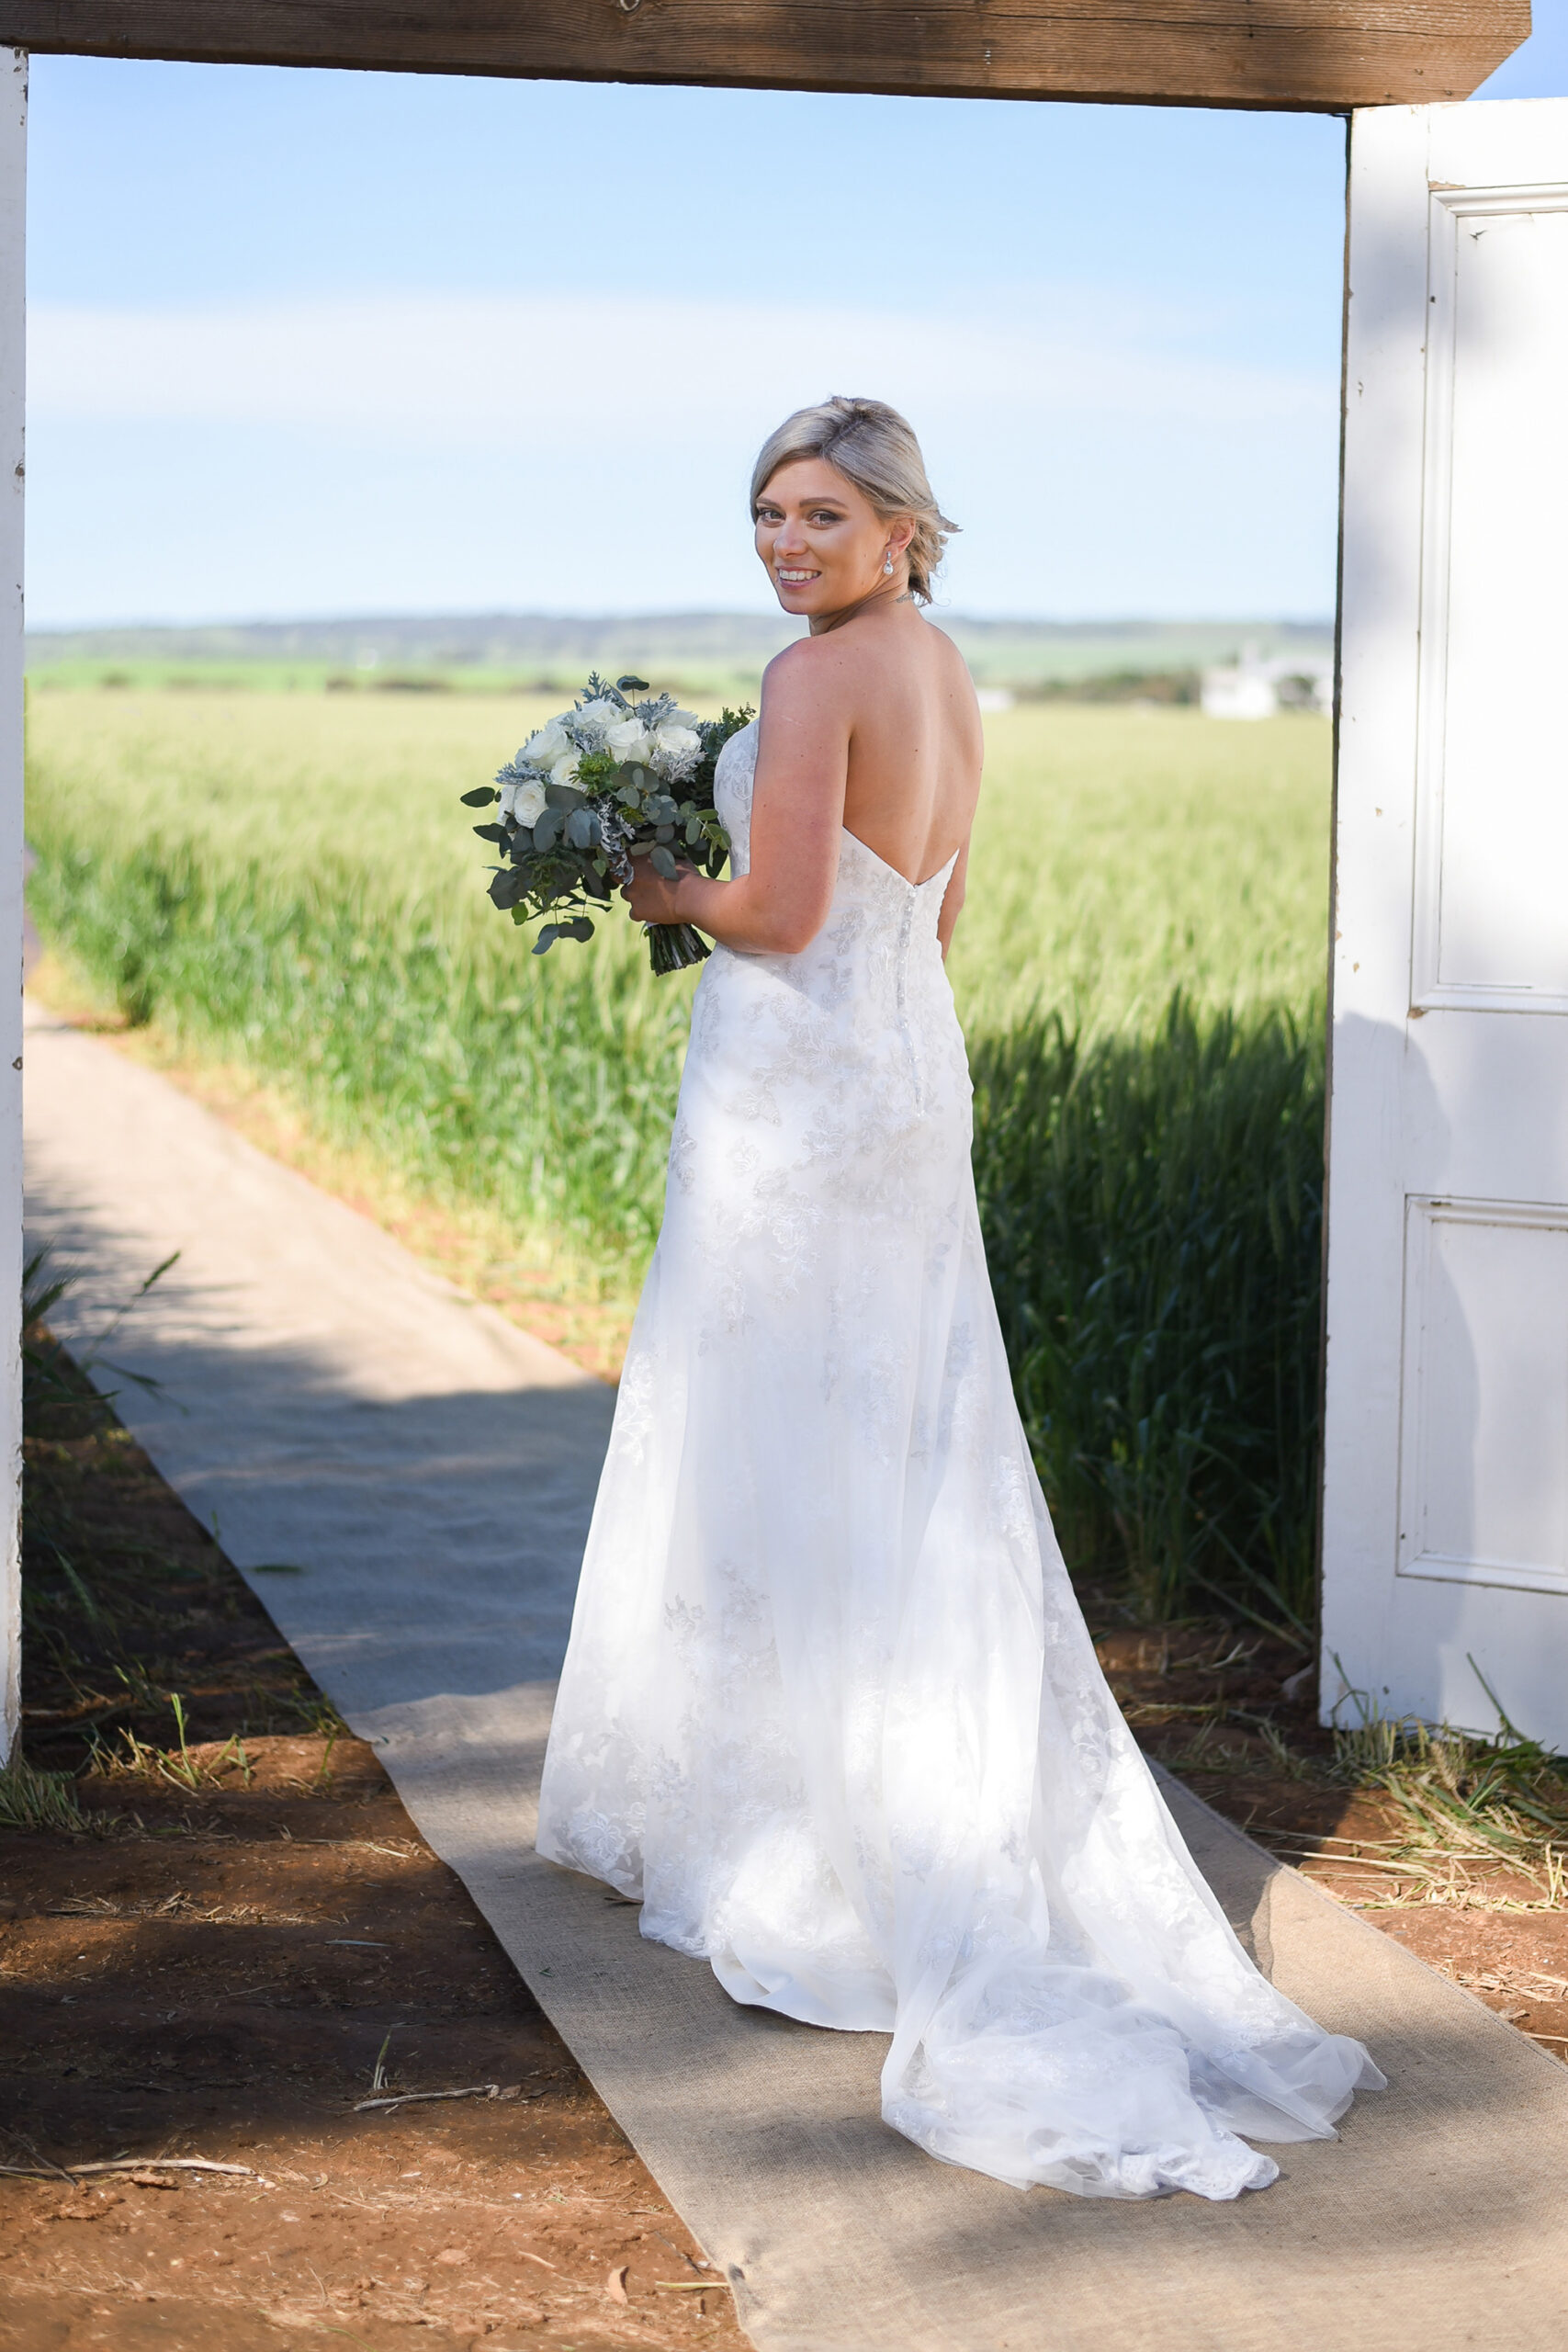 Crystal_Zach_Rustic-Farm-Wedding_SBS_013